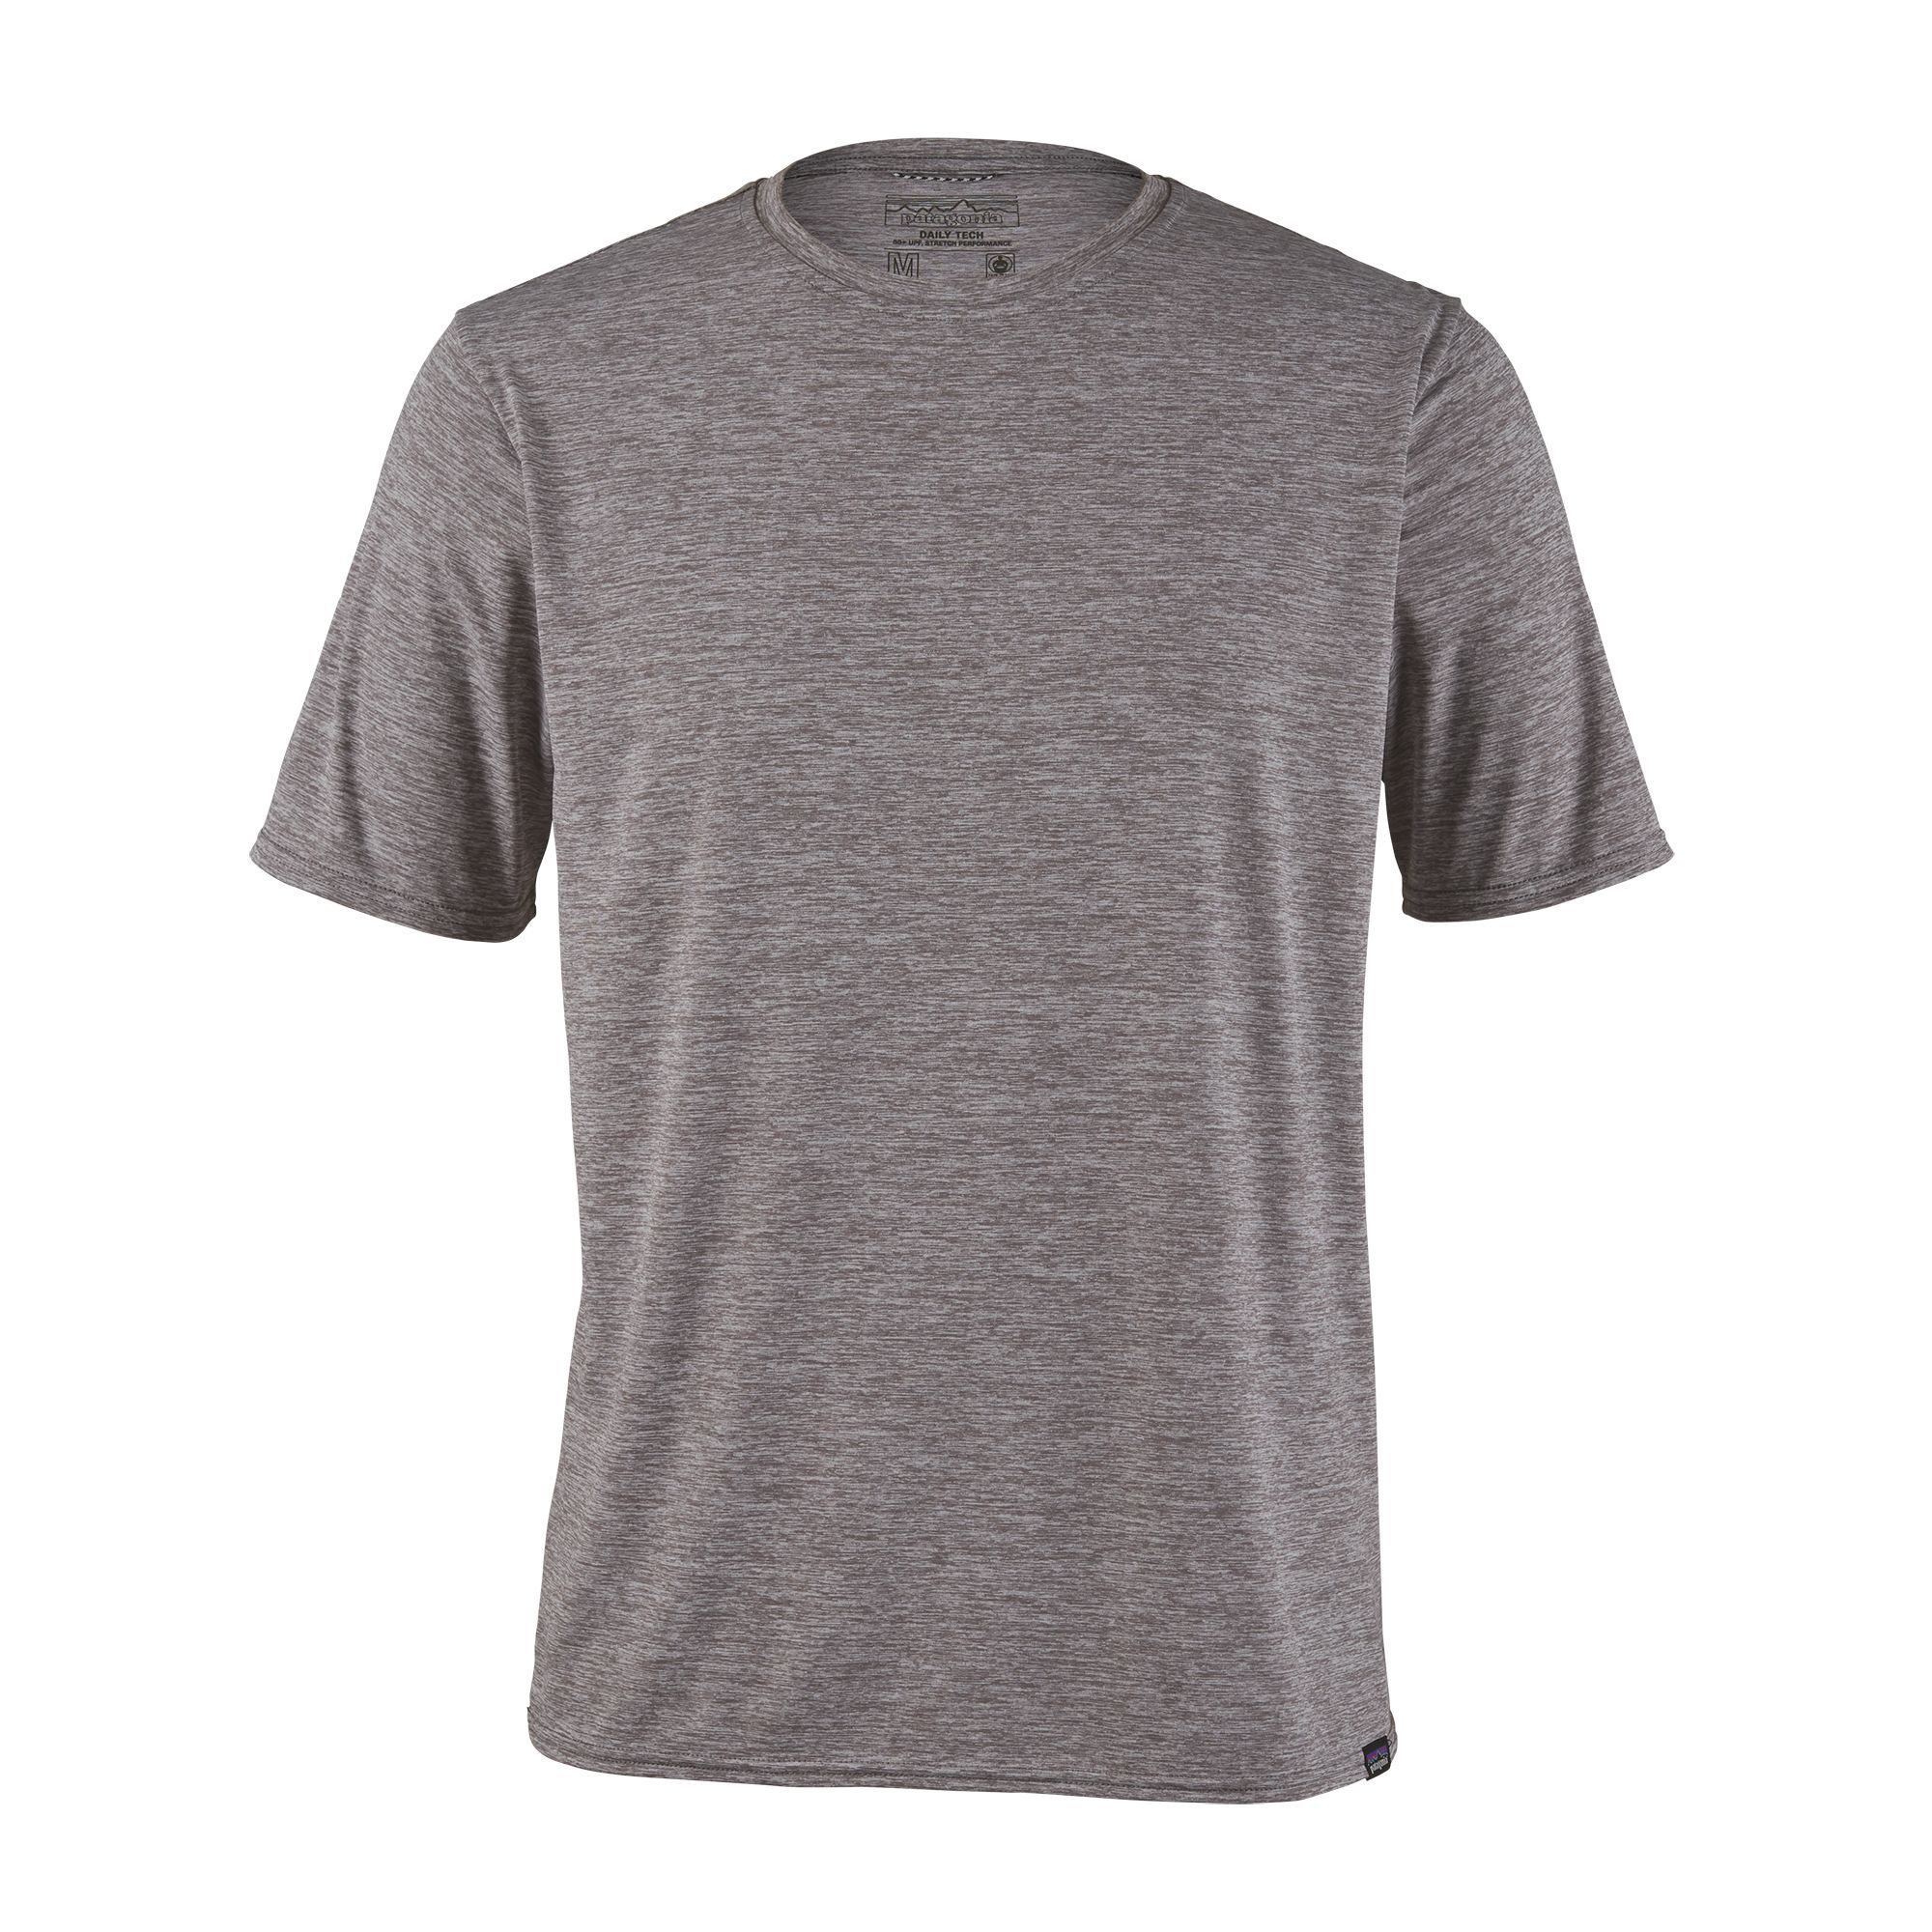 T-shirt Men's Capilene Cool Daily Shirt